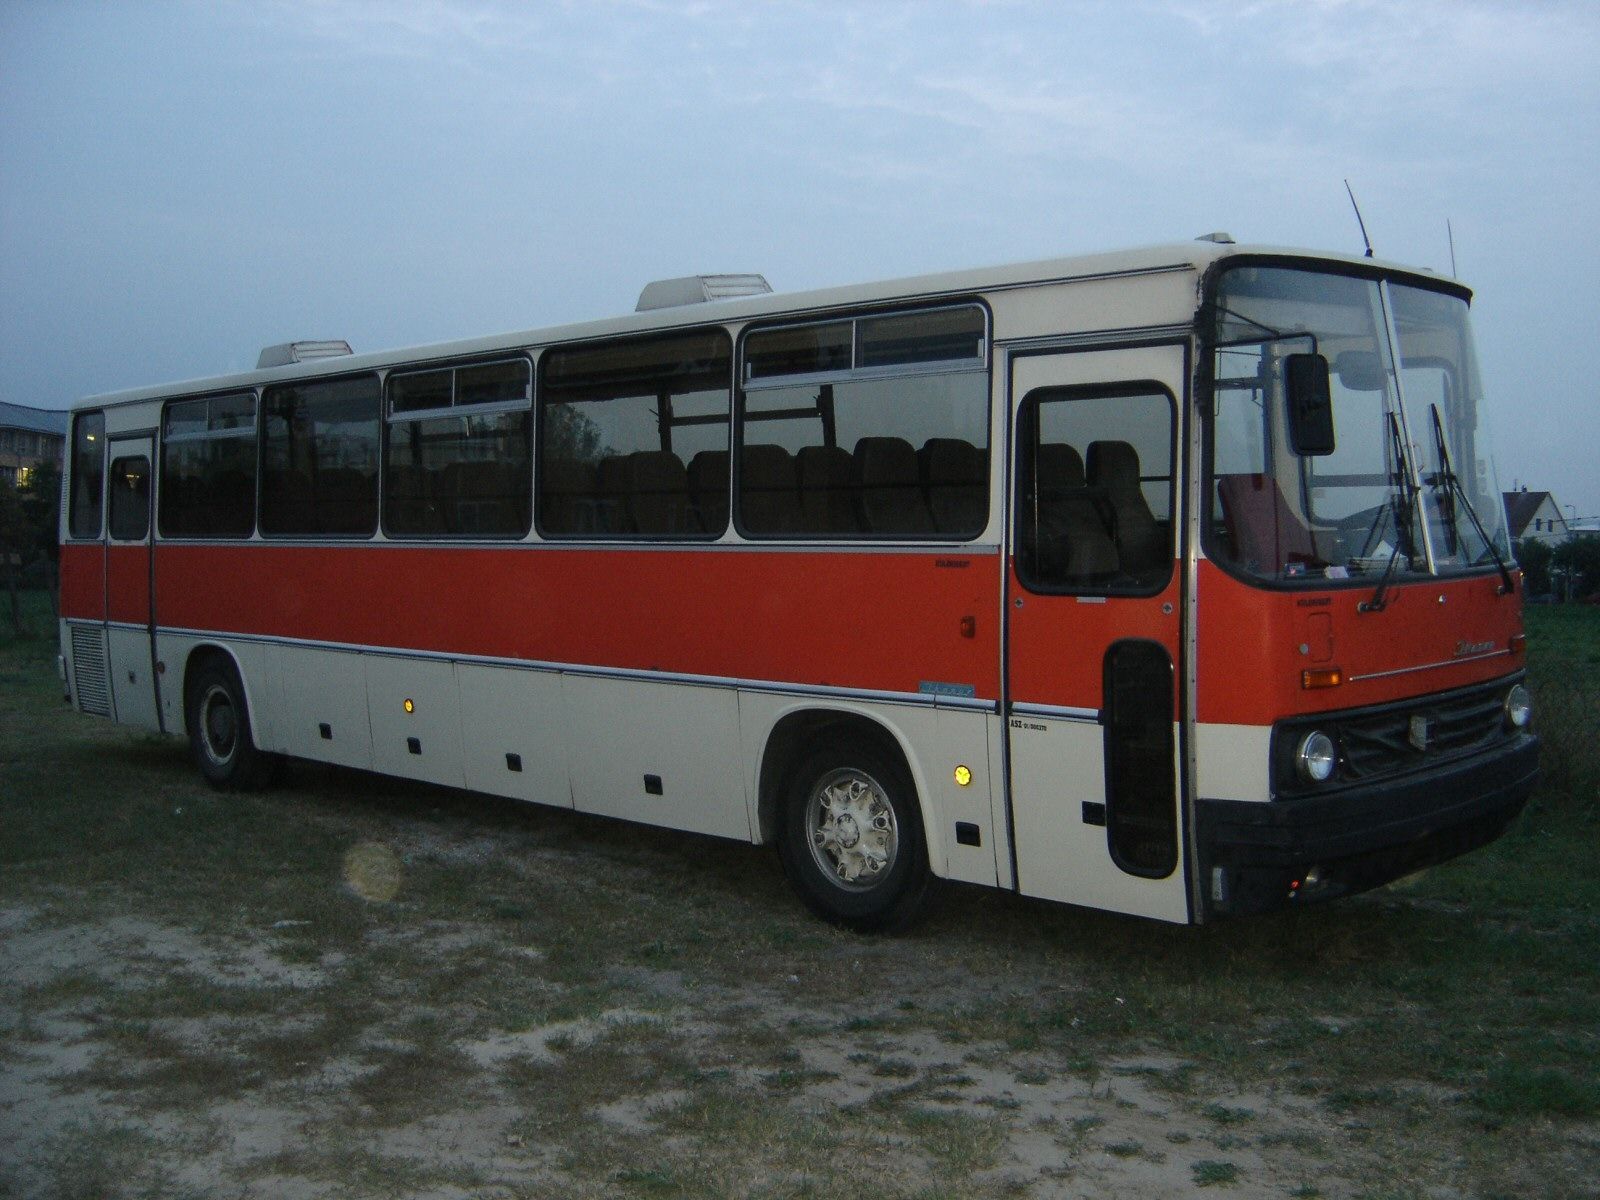 Ikarus 250 - венгерский междугородний автобус, который выпускался с 1973 по 1996 годы. Активно поставлялся в СССР